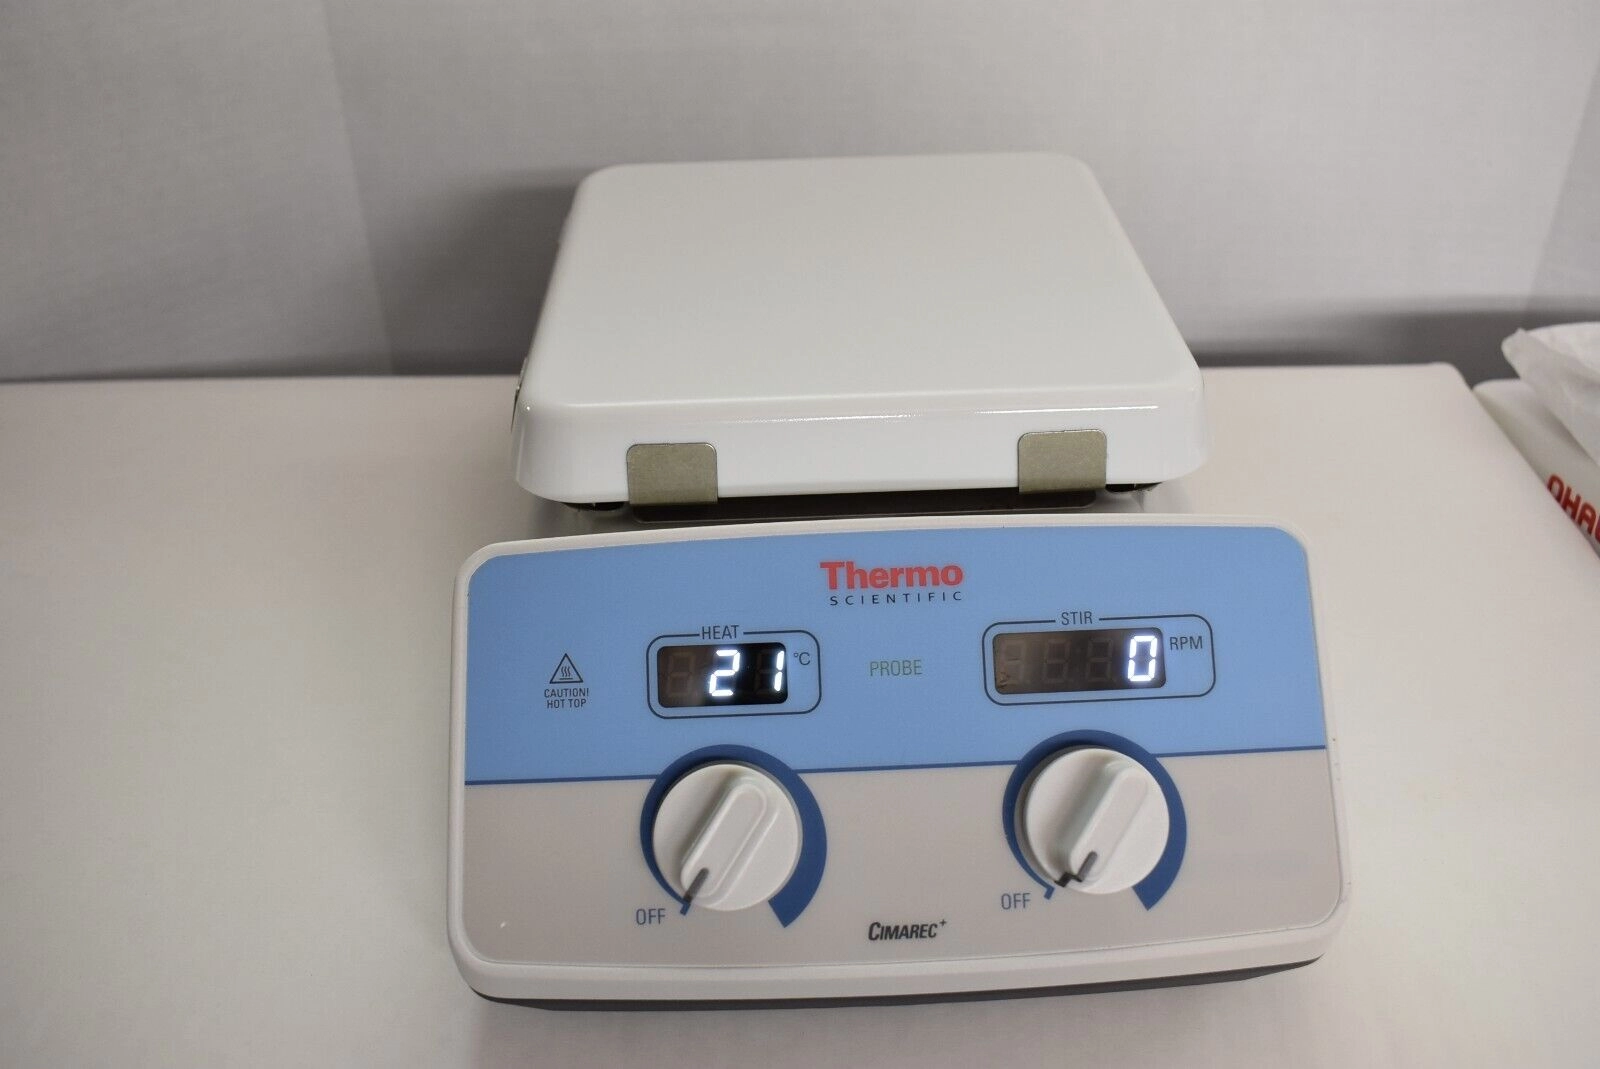 Thermo Scientific Cimarec+ Digital Stirring Hotplate, 7 x 7 Ceramic Top, 100-120V